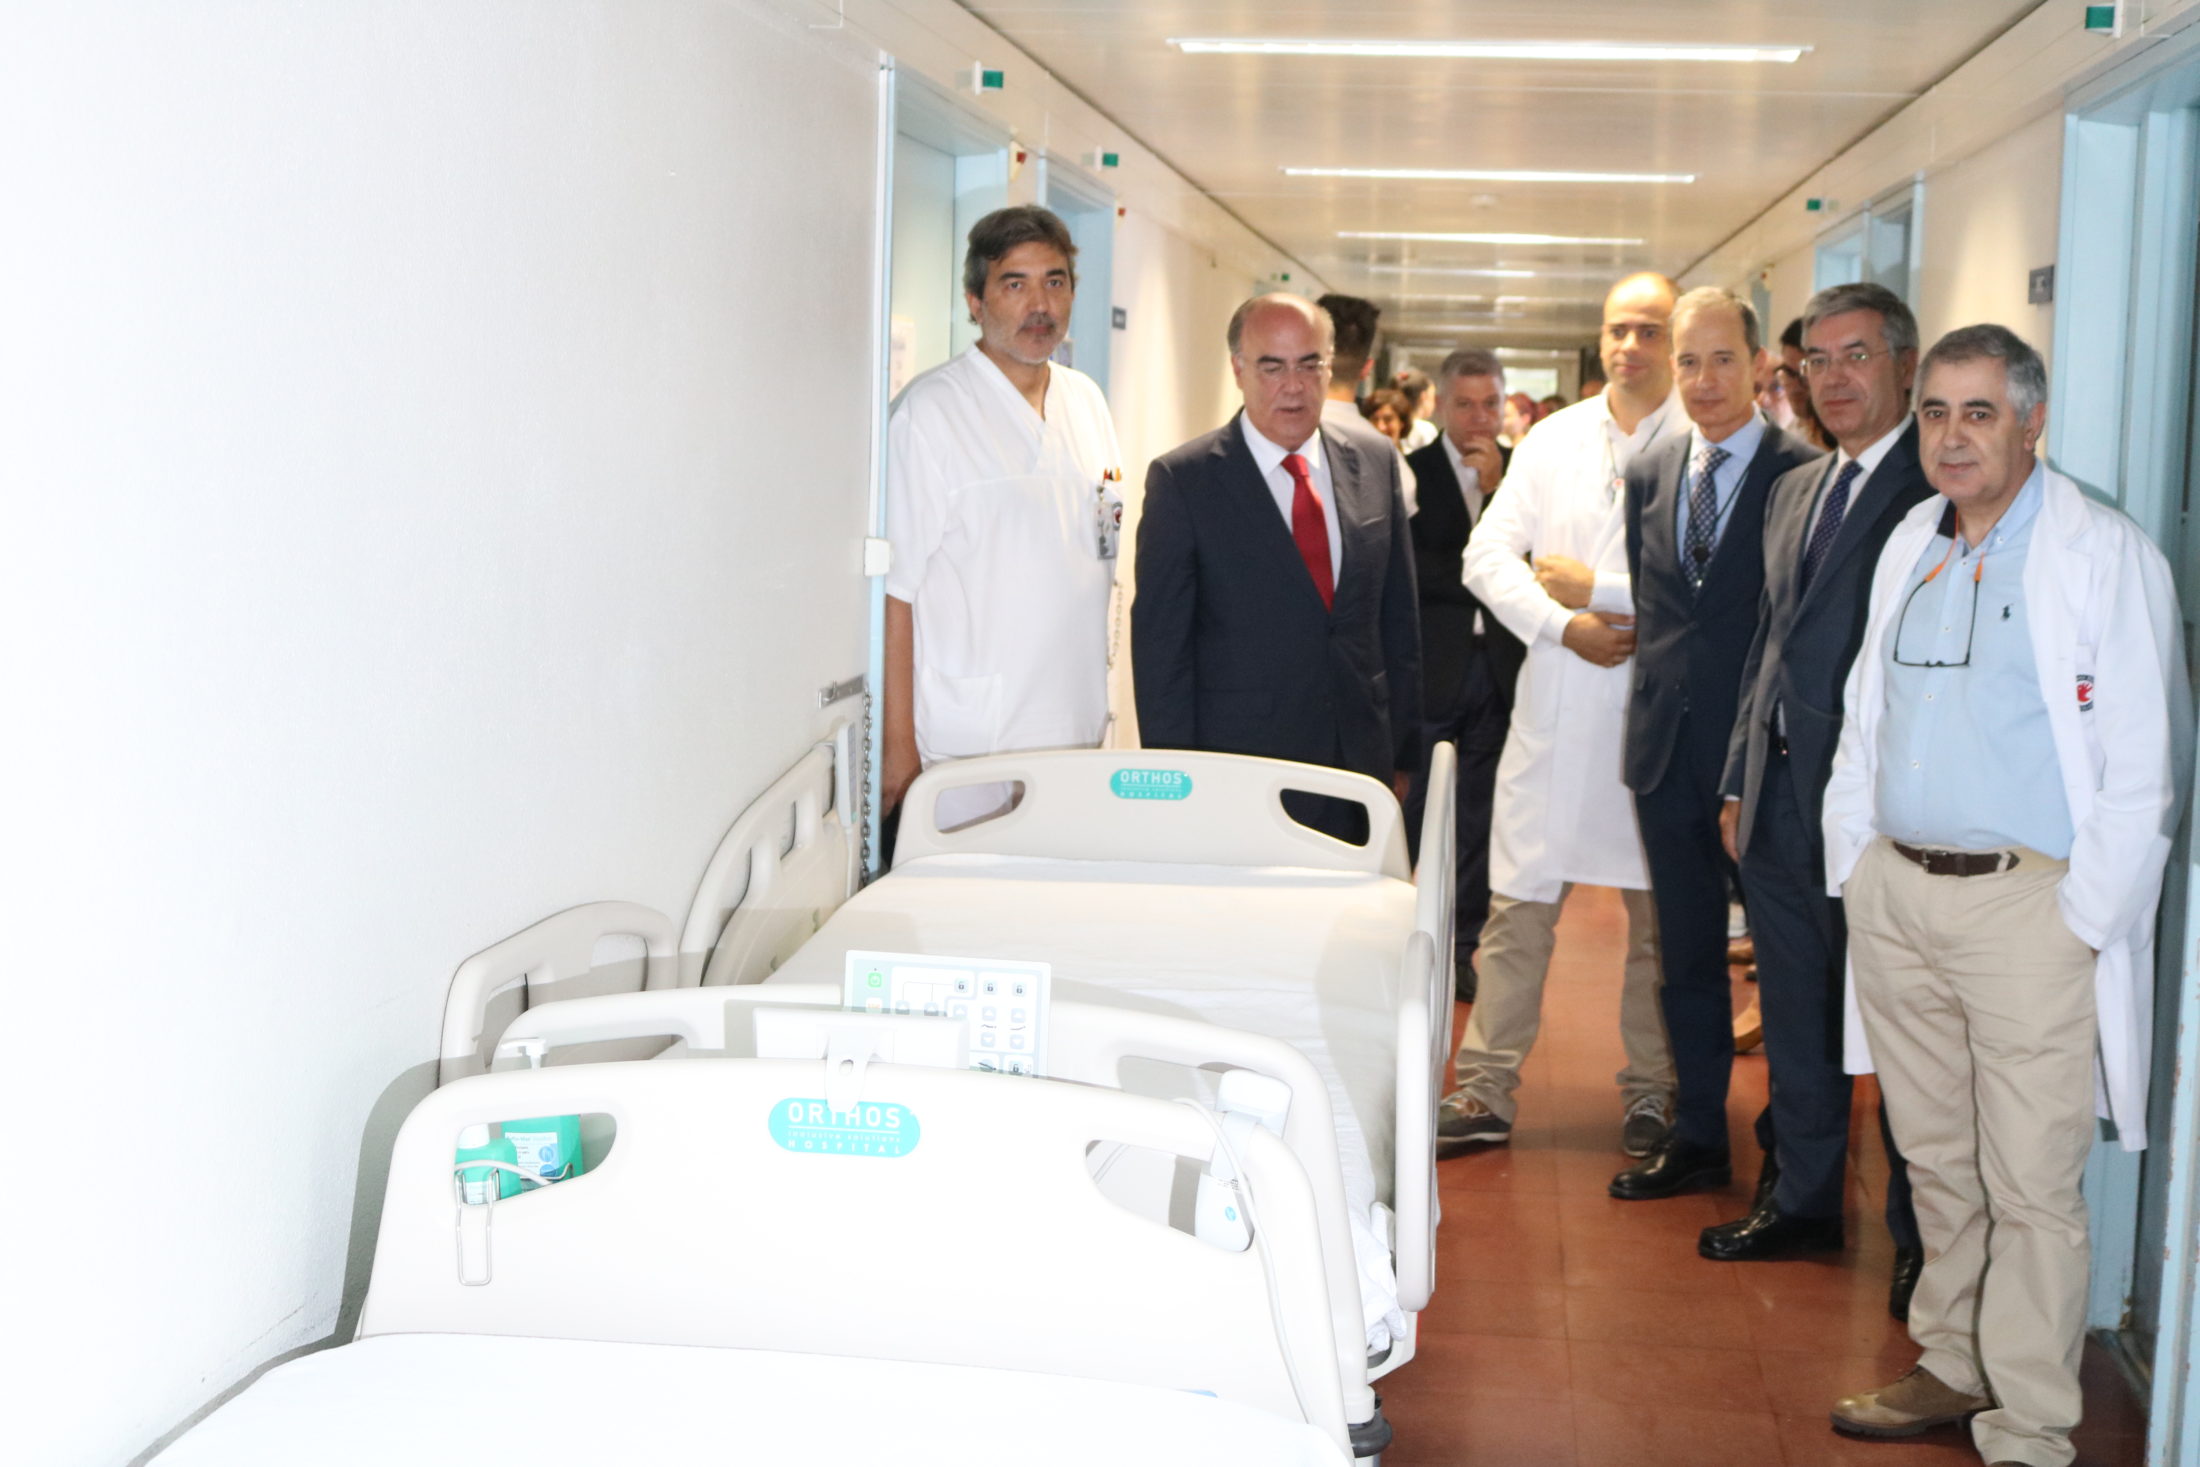 Novas camas melhoram atendimento no Hospital de Barcelos